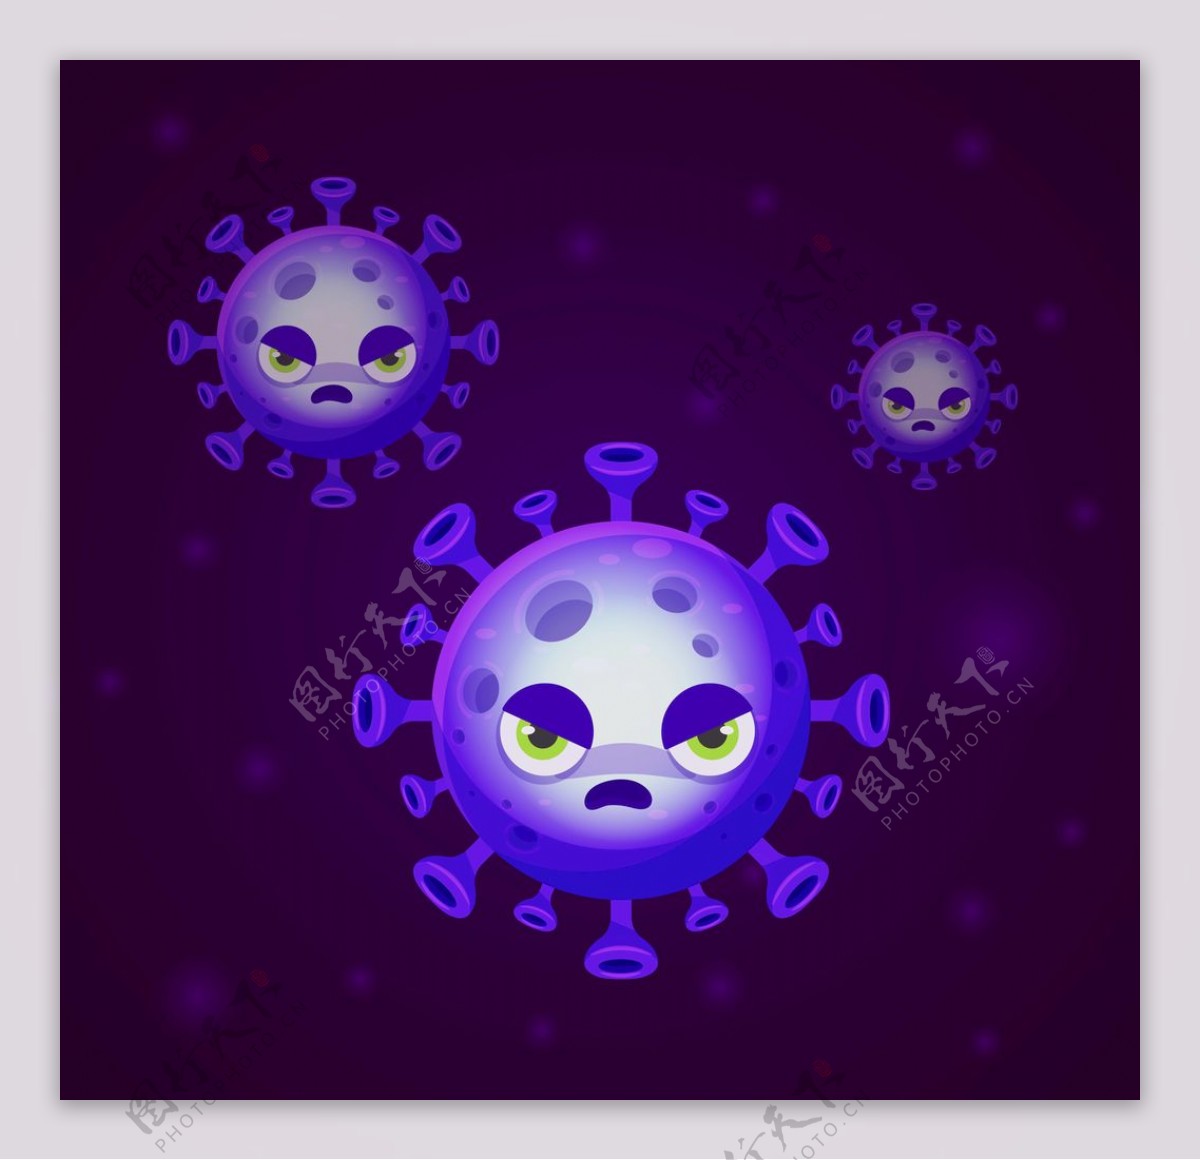 新型冠状病毒